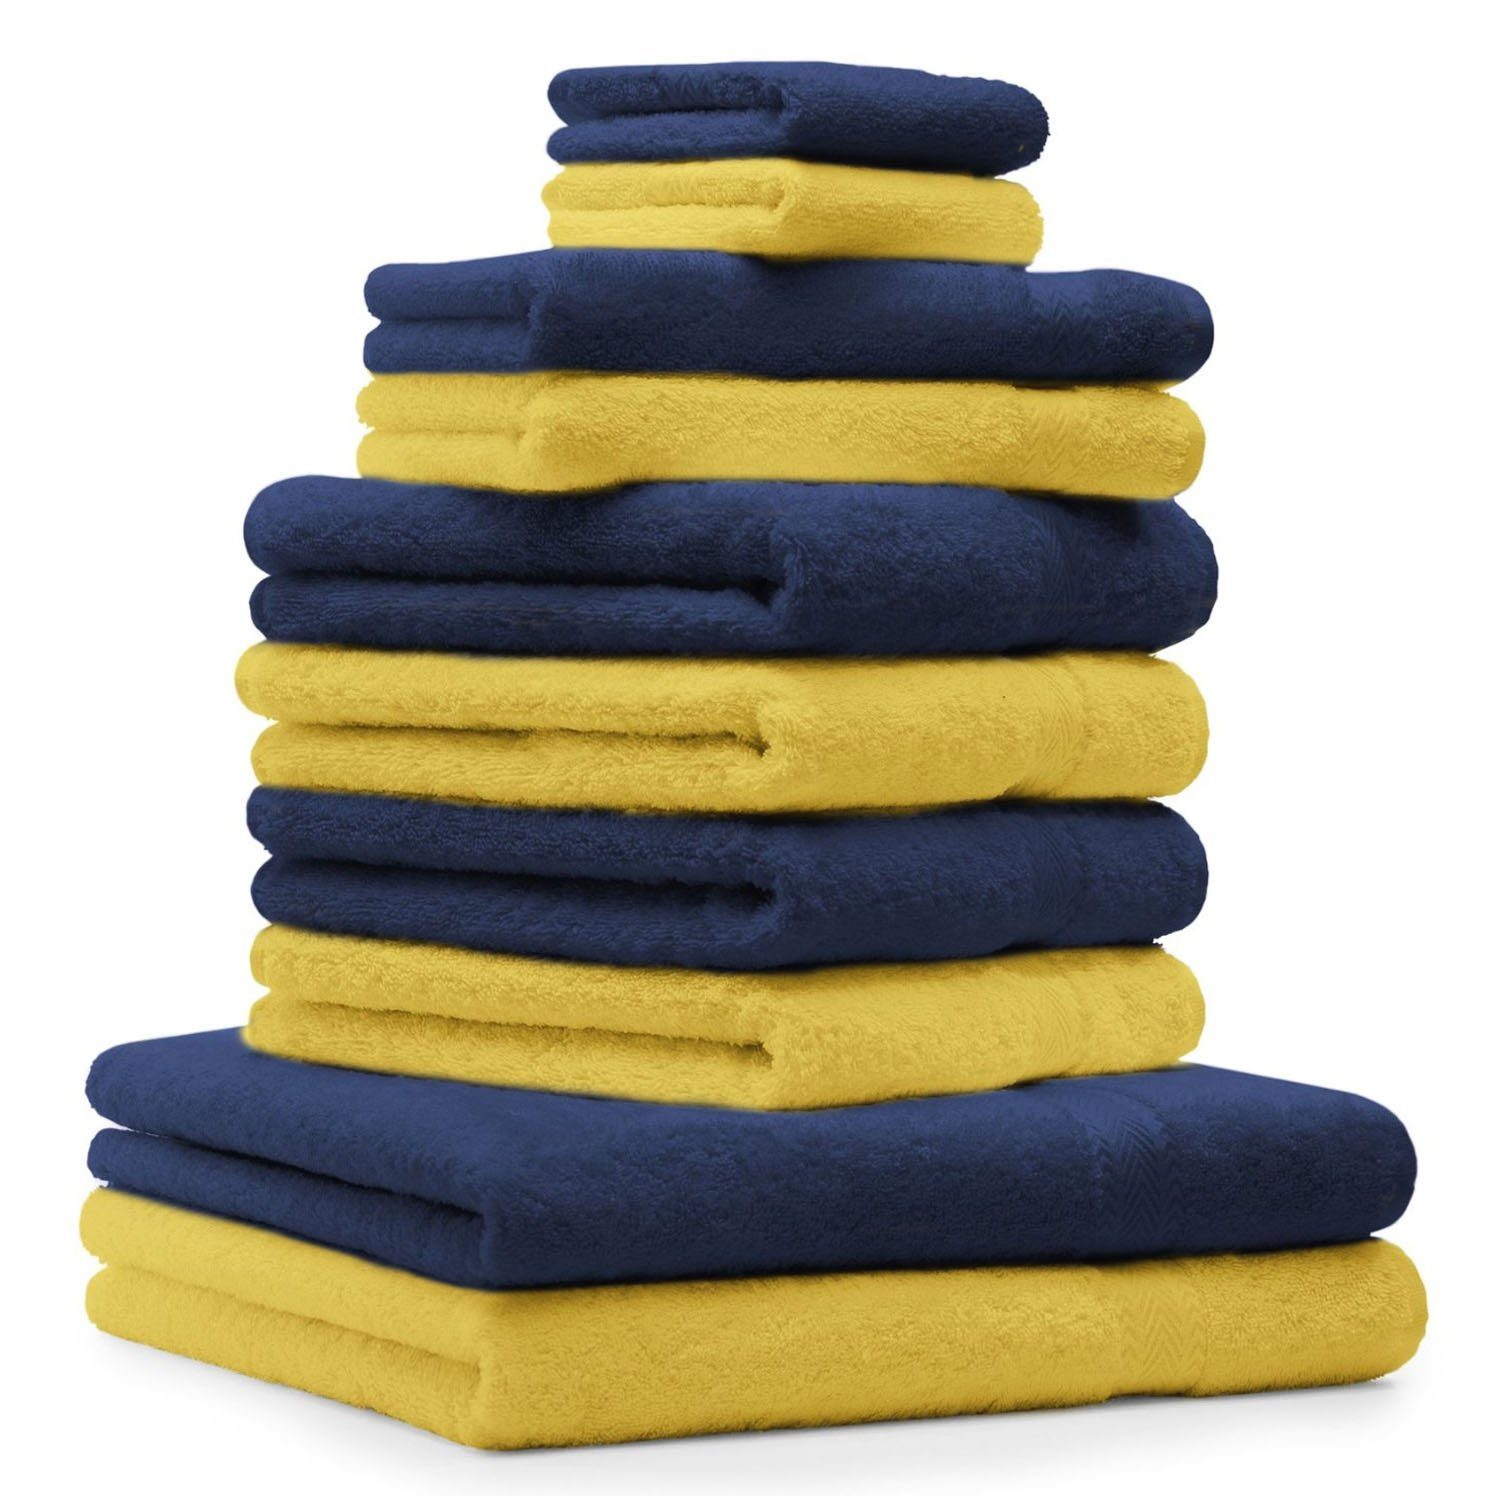 Betz Handtuch Set 10-TLG. Handtuch-Set Farbe gelb und dunkelblau, 100% Baumwolle